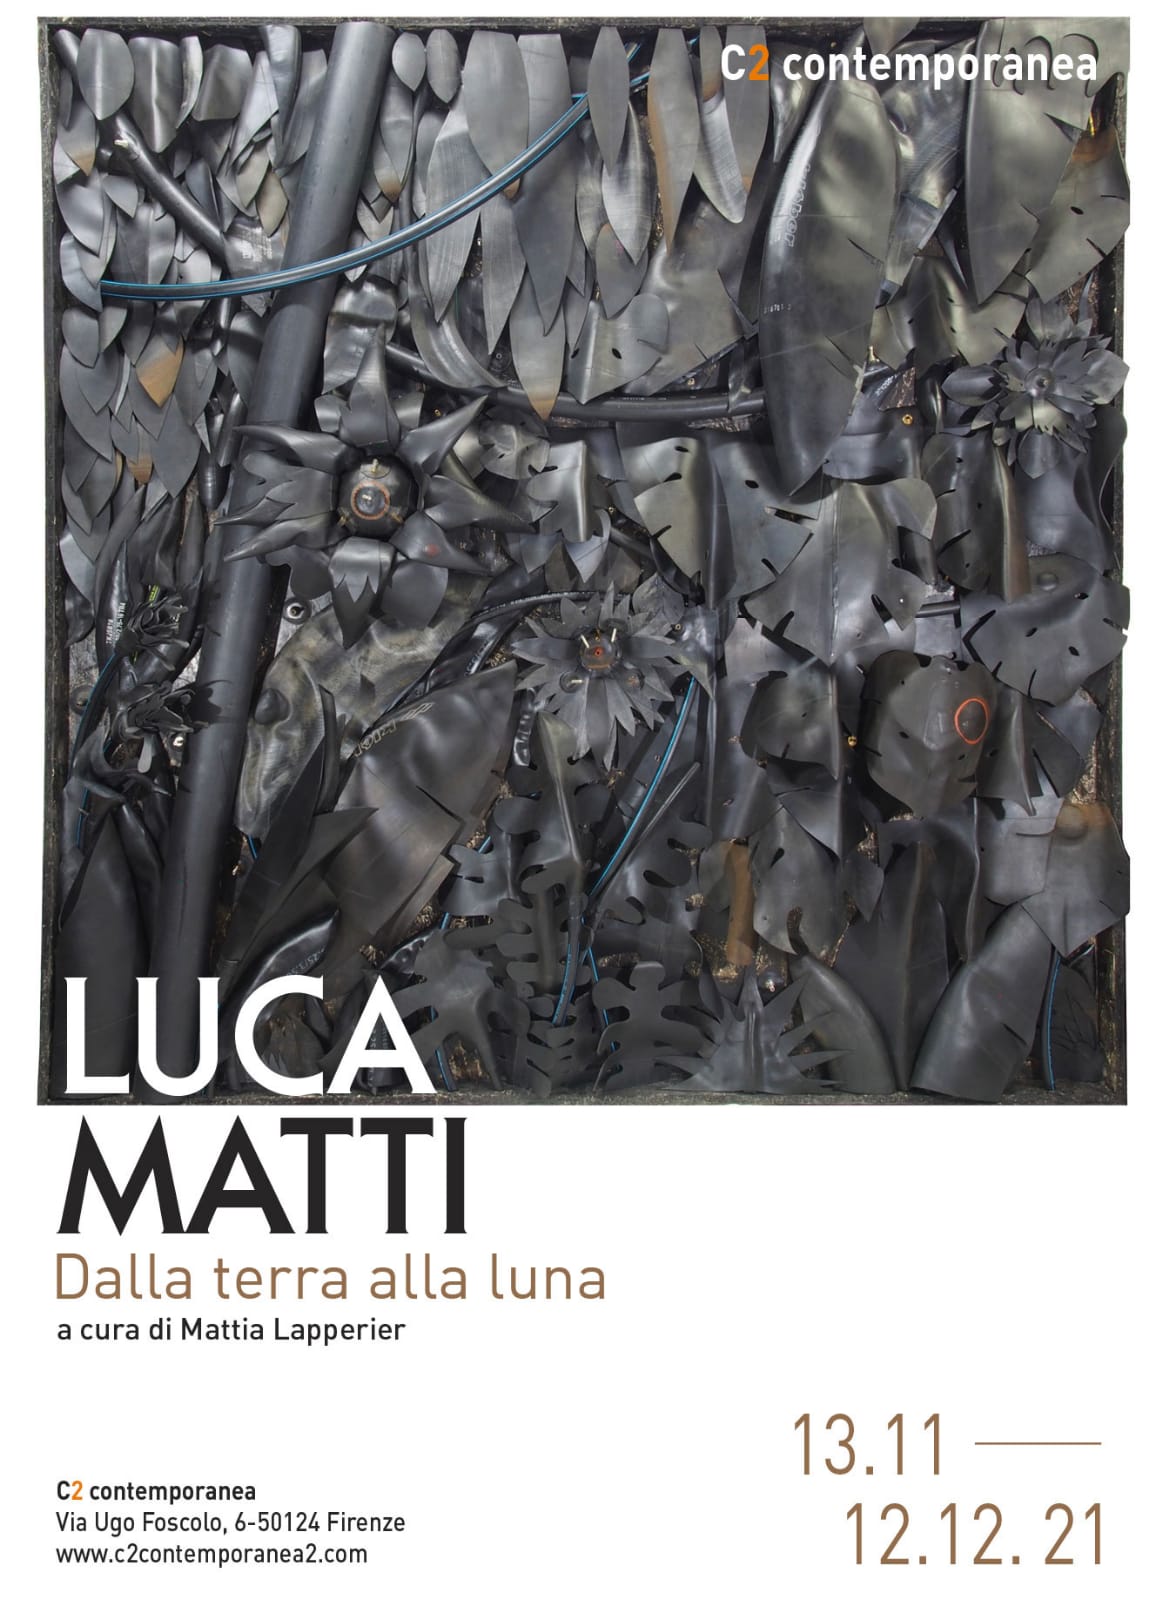 Luca Matti / Dalla terra alla luna, a cura di Mattia Lapperier